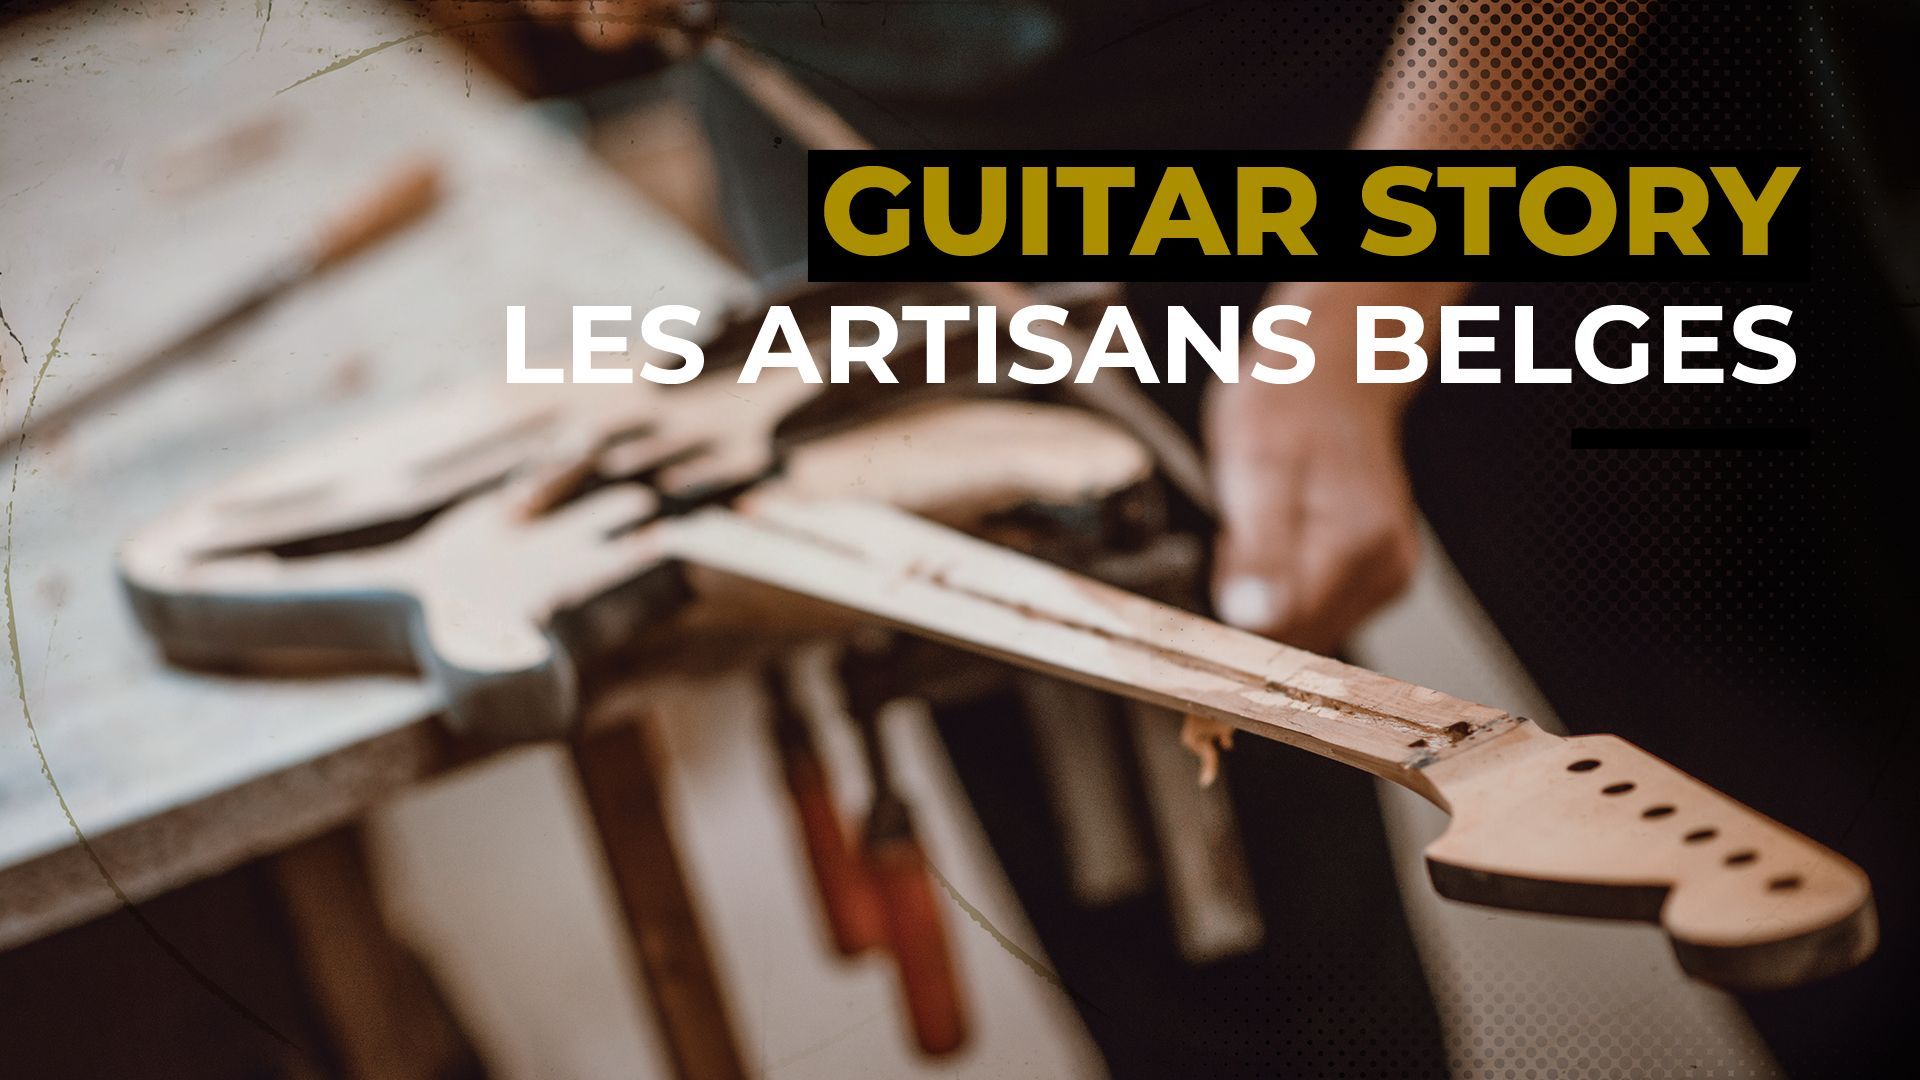 Laurent Debeuf met les talents locaux à l’honneur dans Guitar Story !